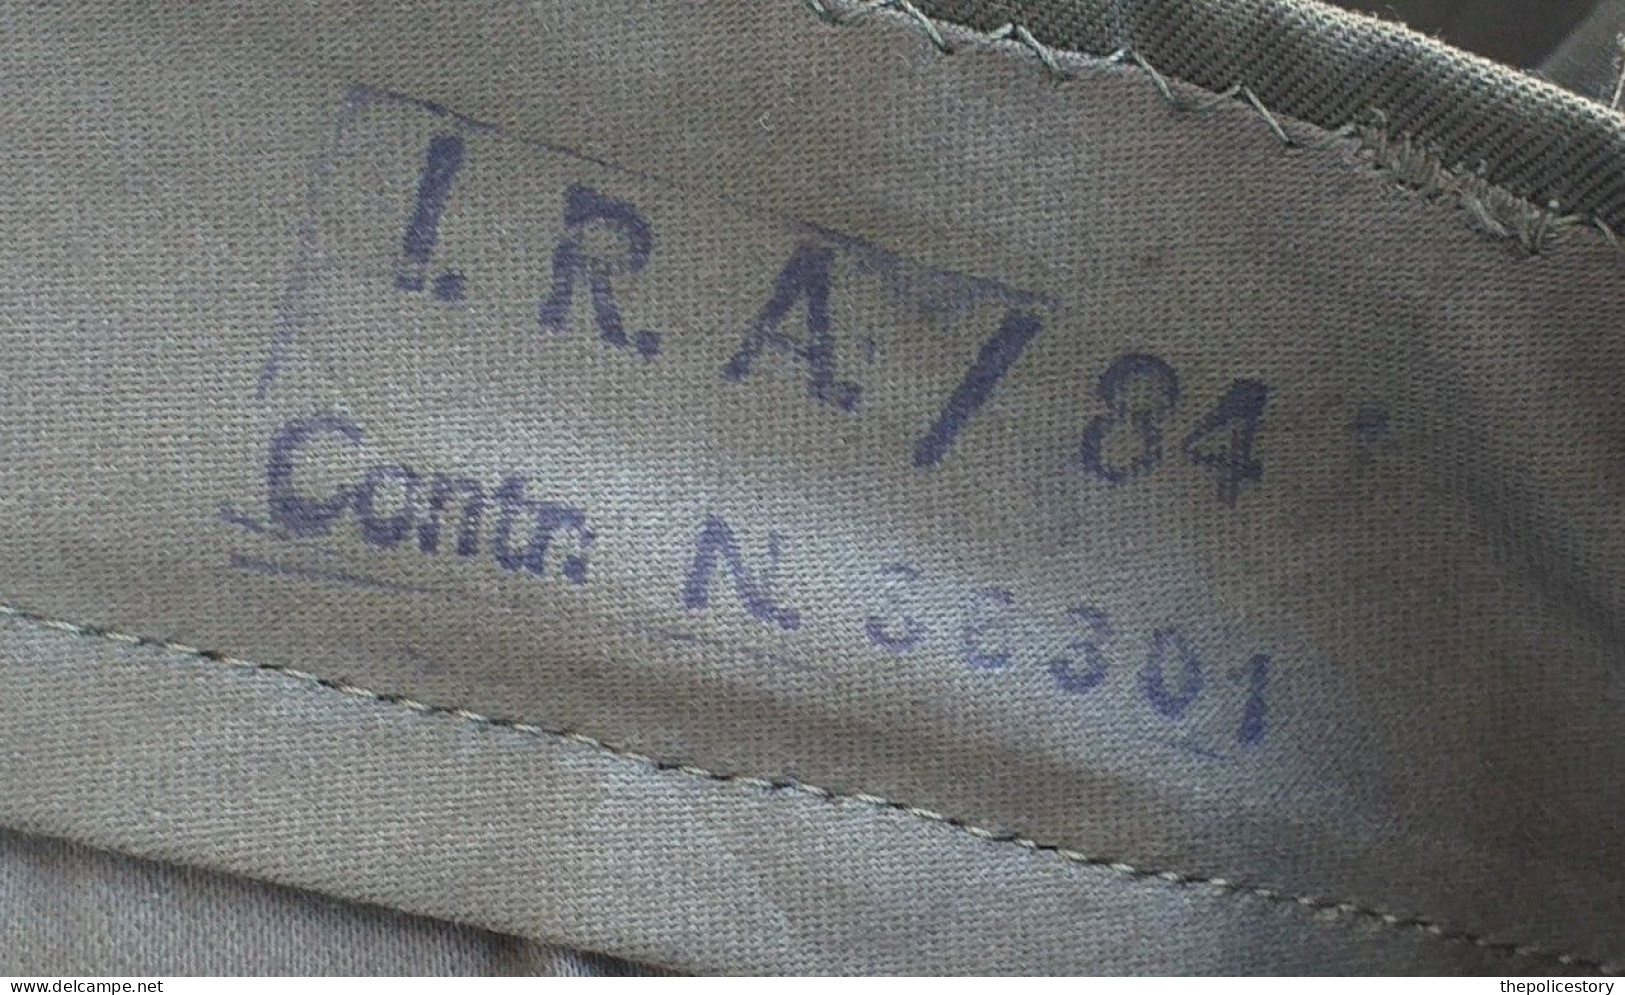 Giacca pantaloni mimetica verde NATO A.M. tg. 54 del 1983 originale mai usata